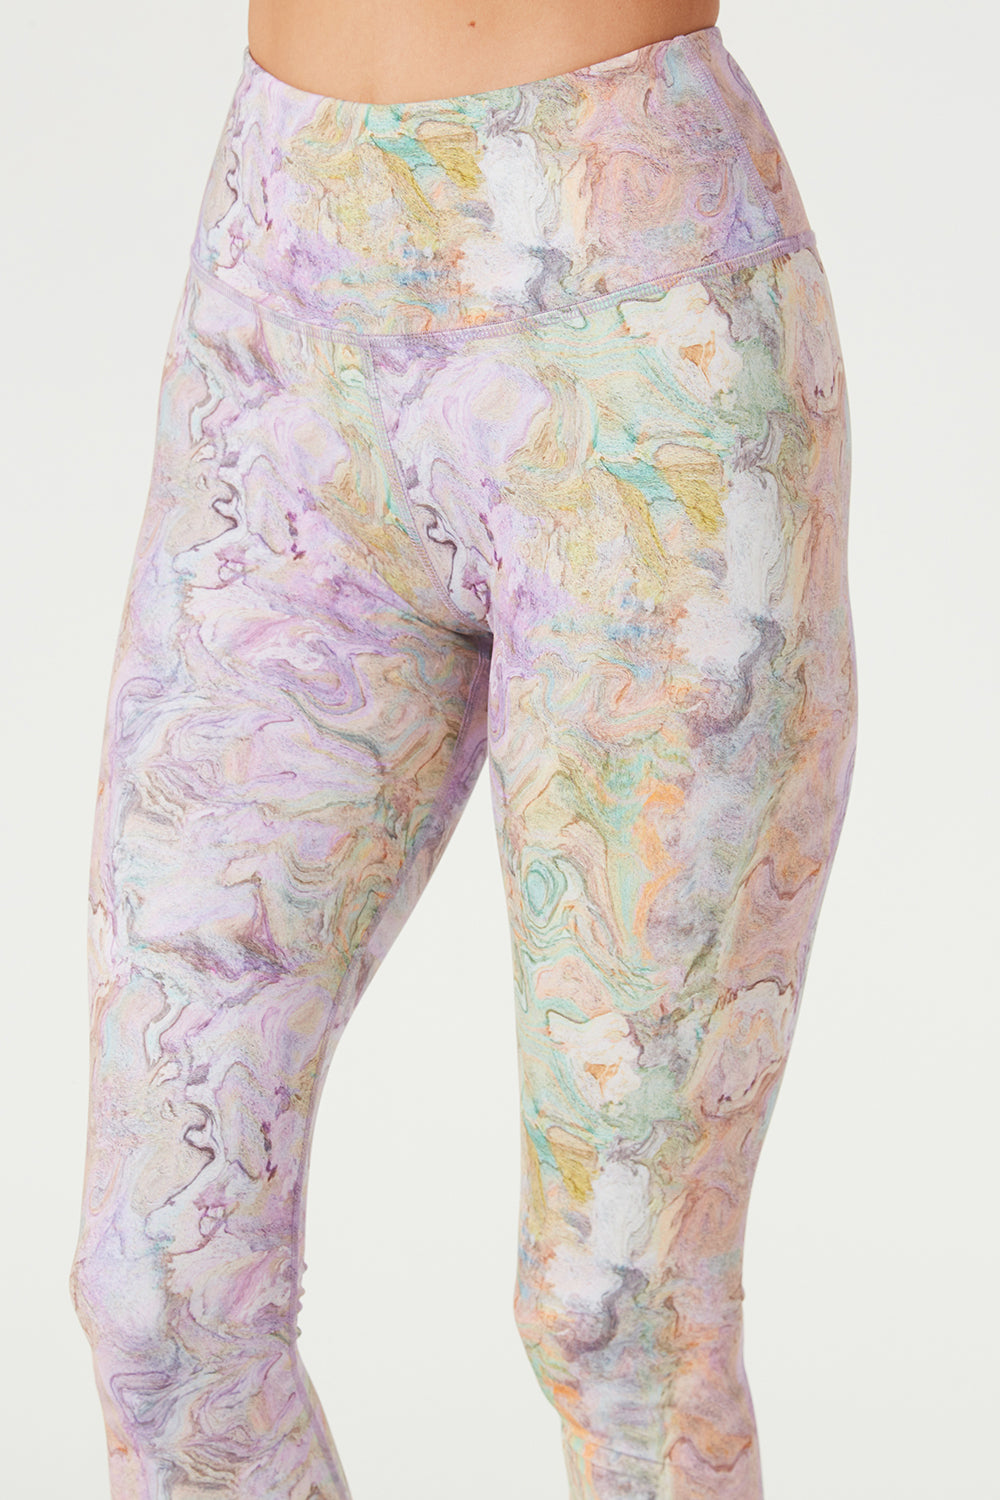 ALO yoga leggings pants marble swirl XS